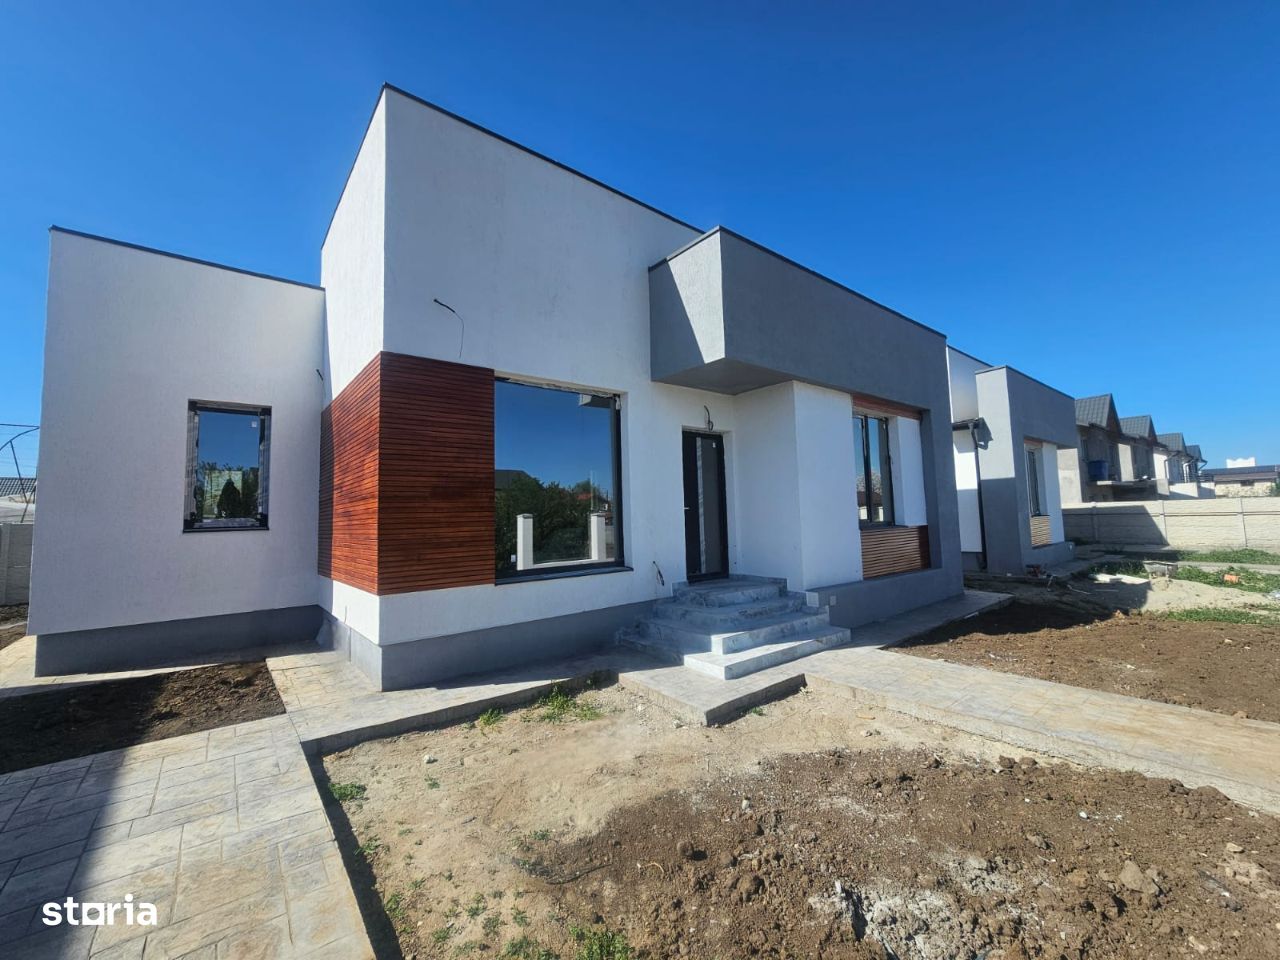 Vila casa de vanzare cu design modern in comuna Berceni Ilfov